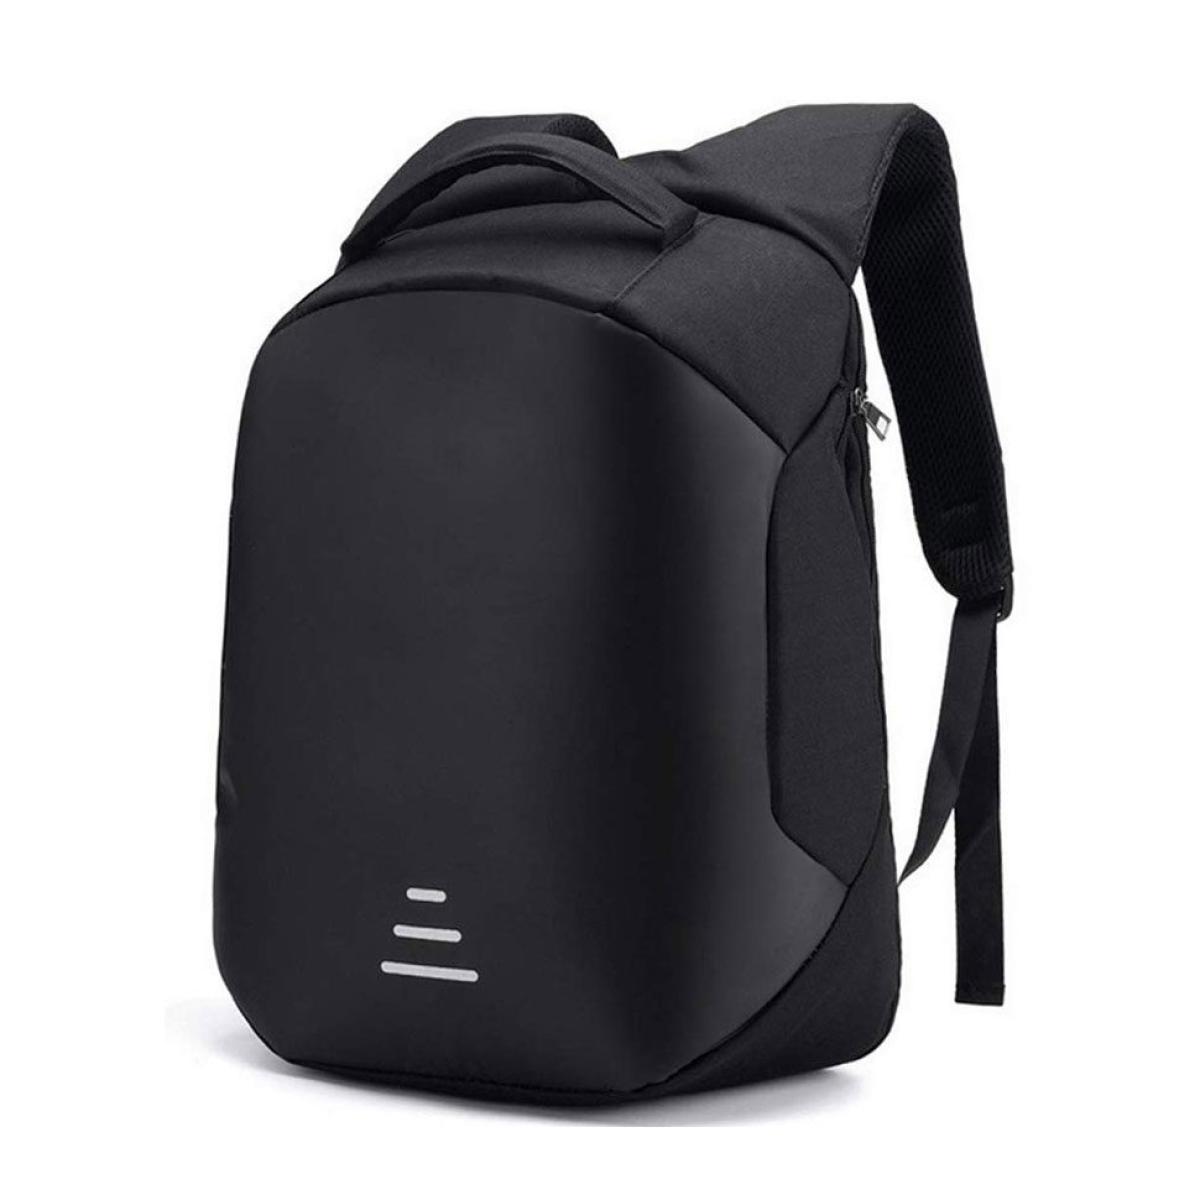 Smart Laptop Backpack 15.6